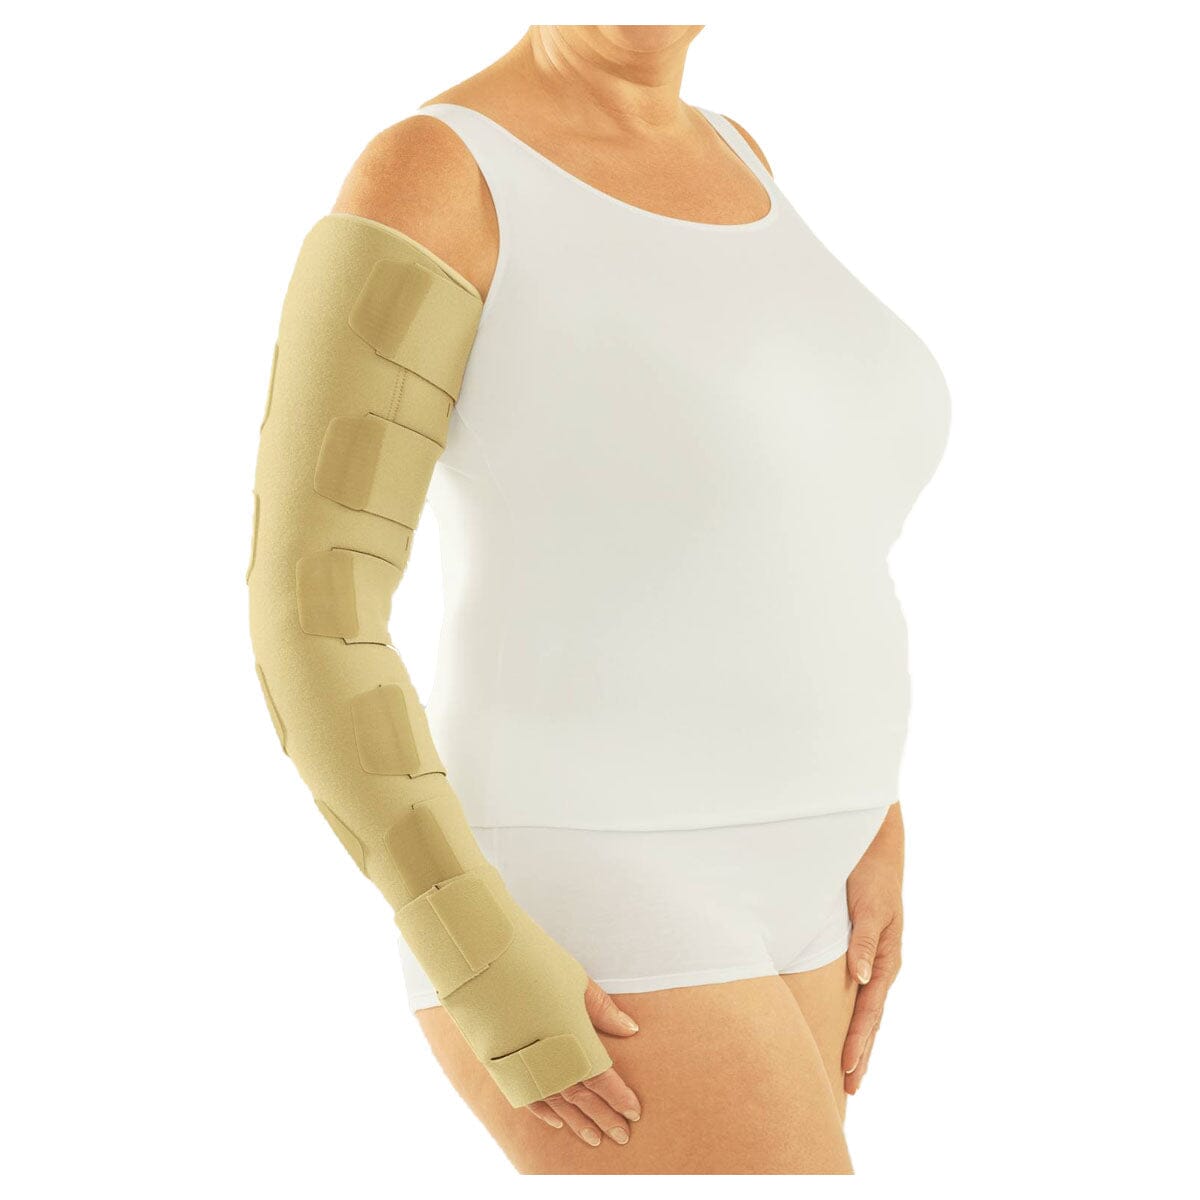 Image of Medi Circaid® Reduction Kit, Arm, Regular, Long, 55cm